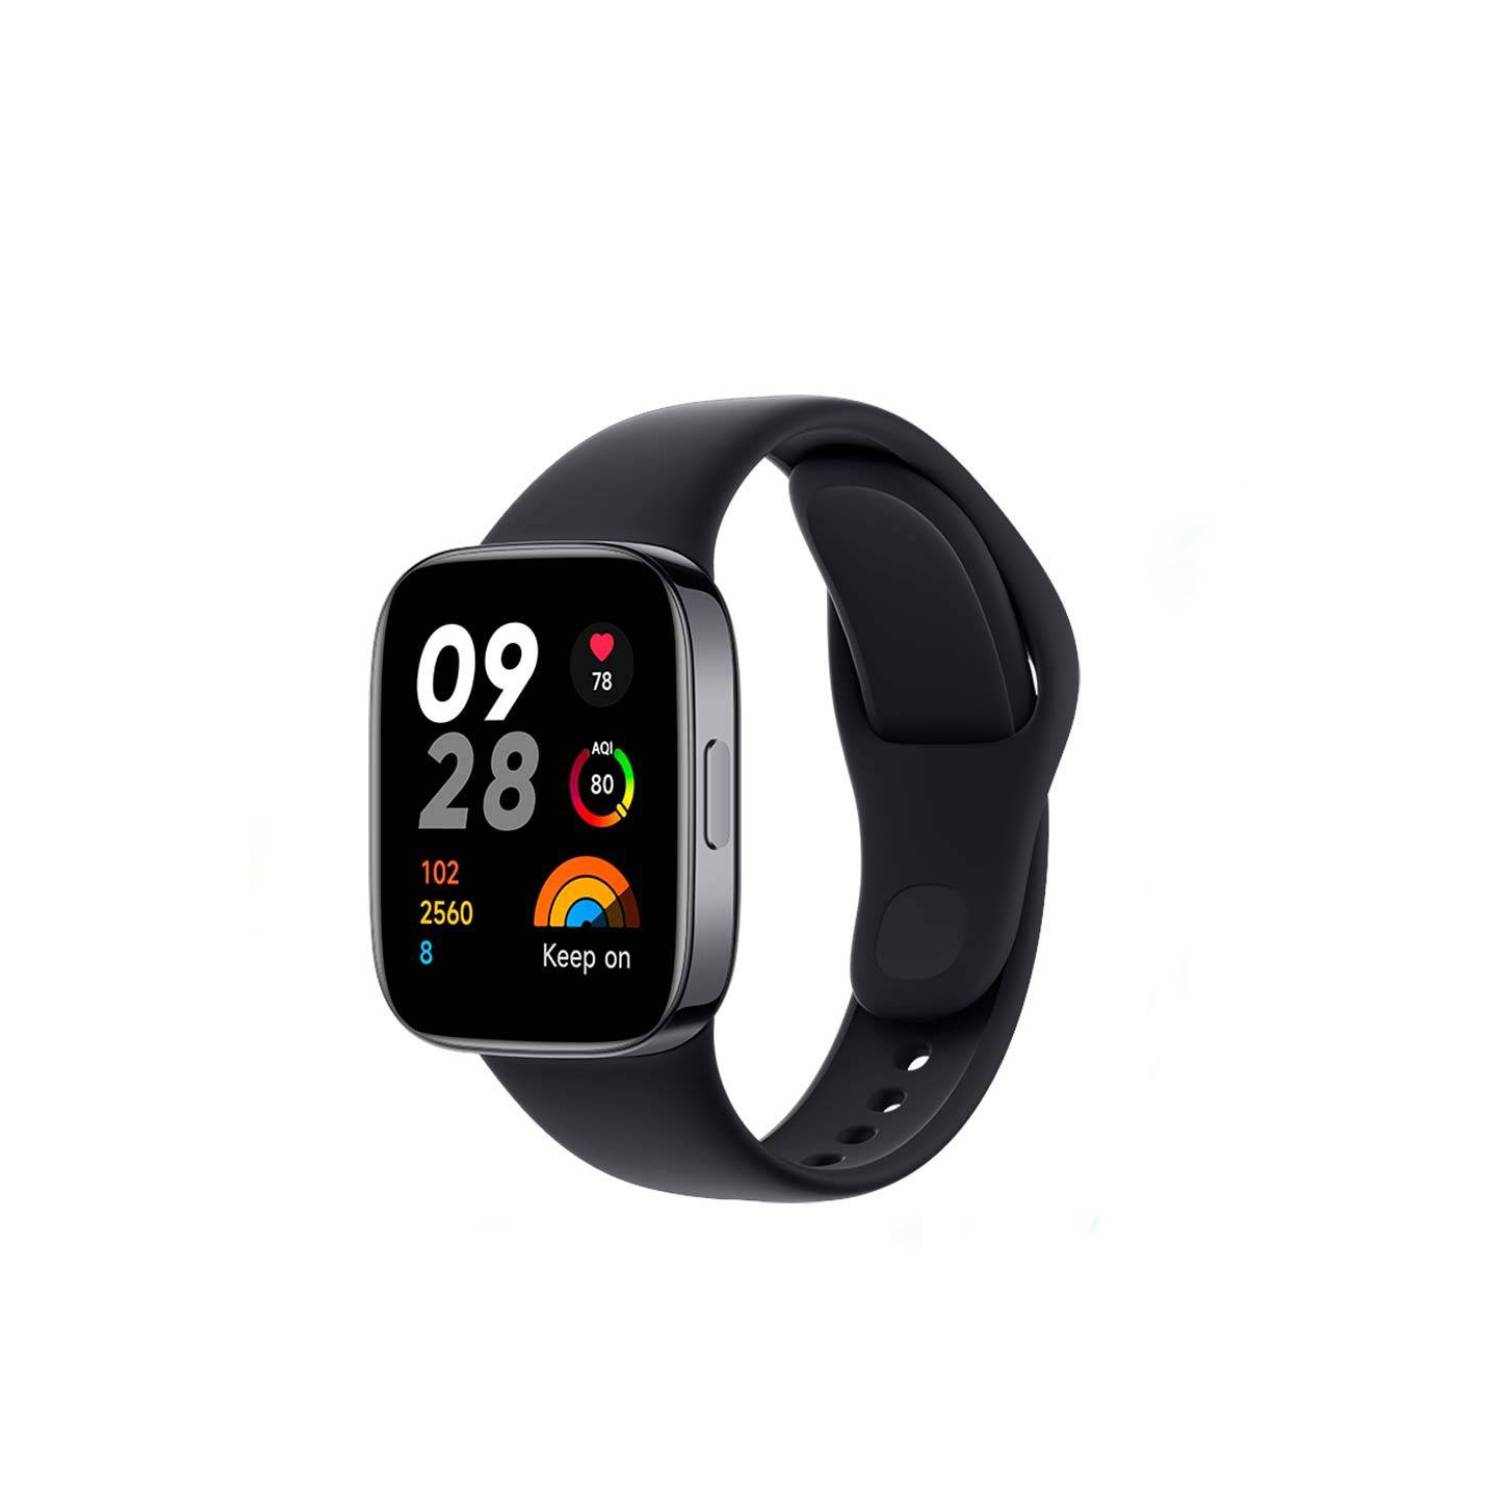 Reloj Xiaomi Redmi Watch 4 - Gps, Contesta y Realiza LLamadas